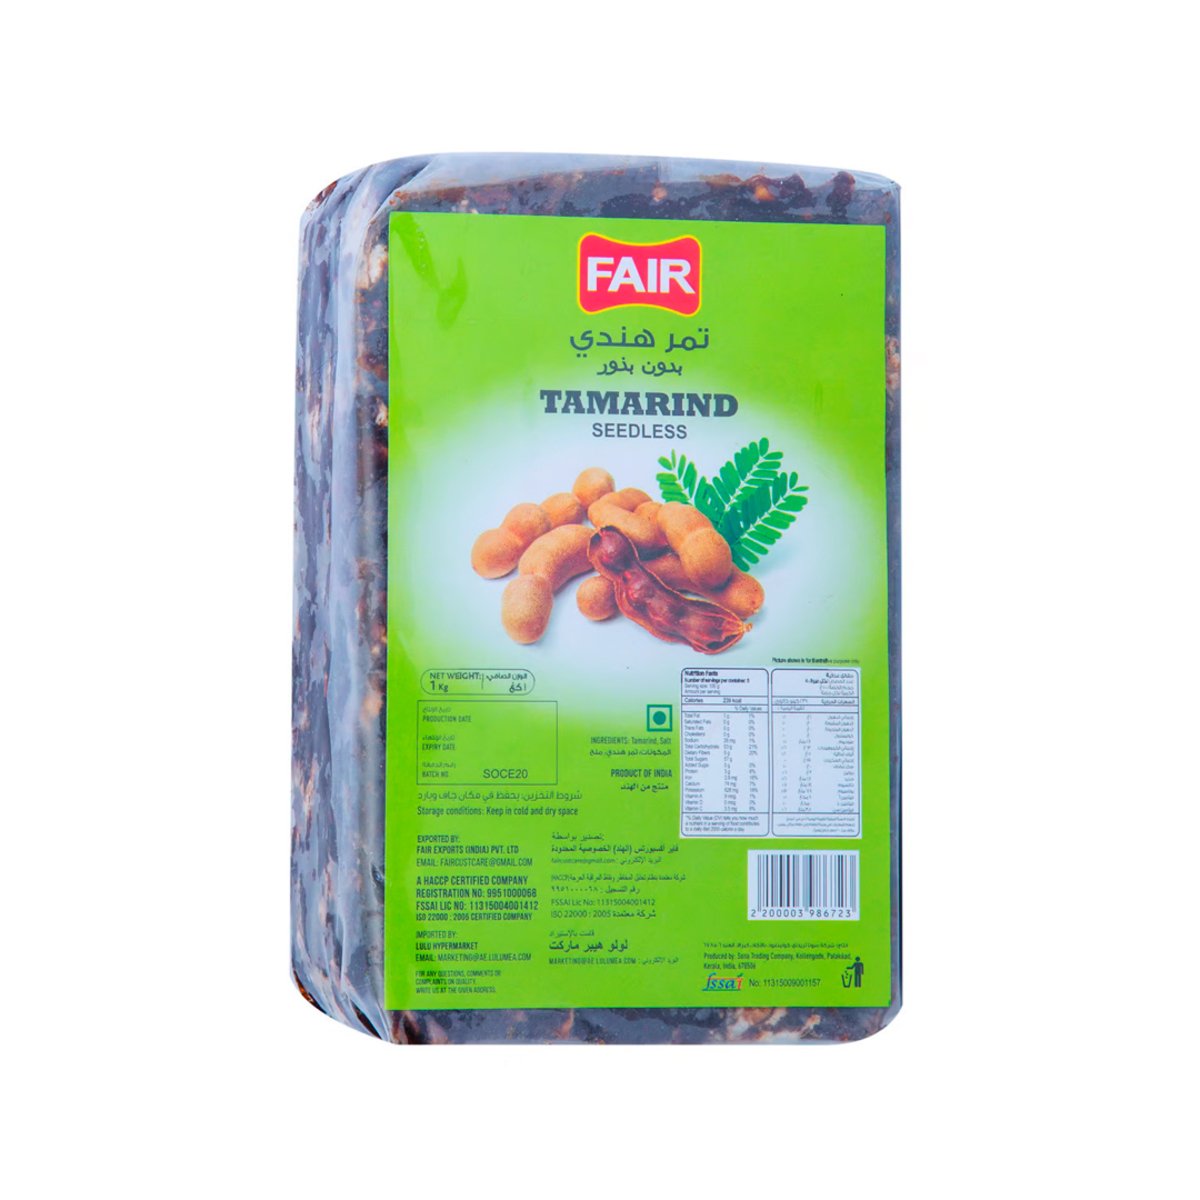 Fair Seedless Tamarind 1kg